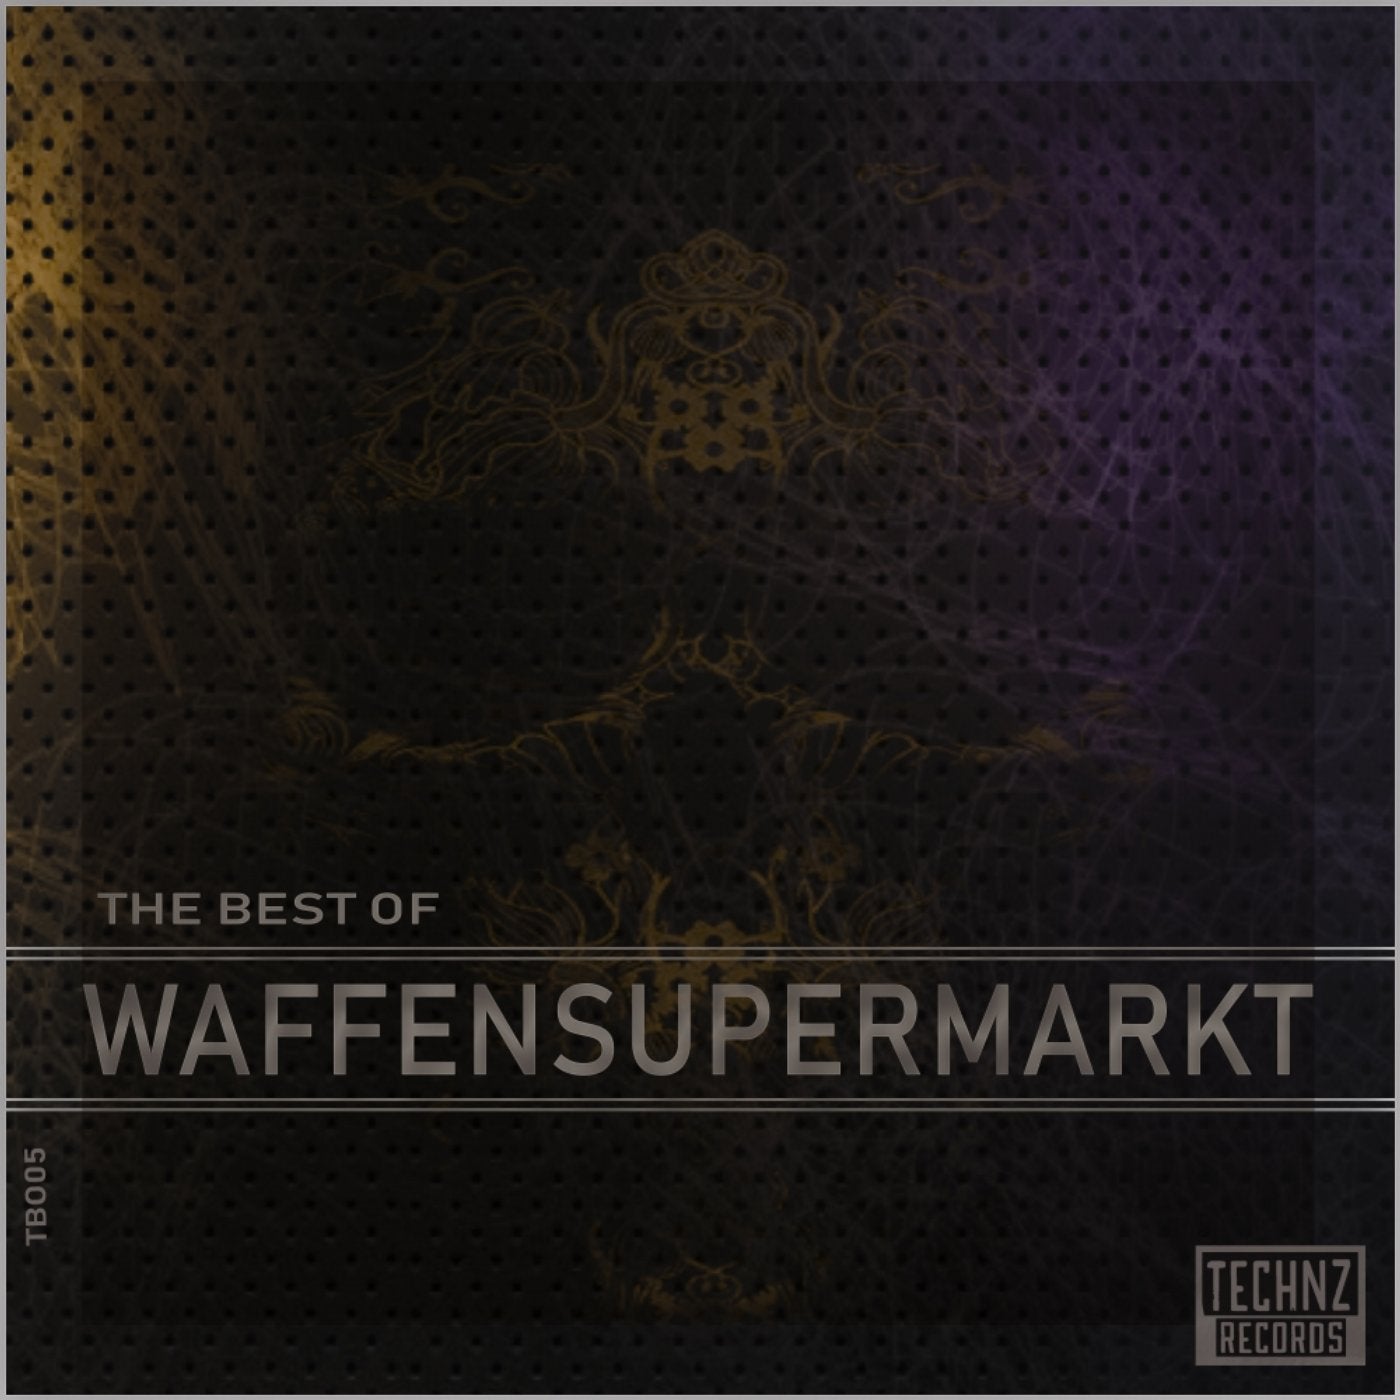 The Best of Waffensupermarkt